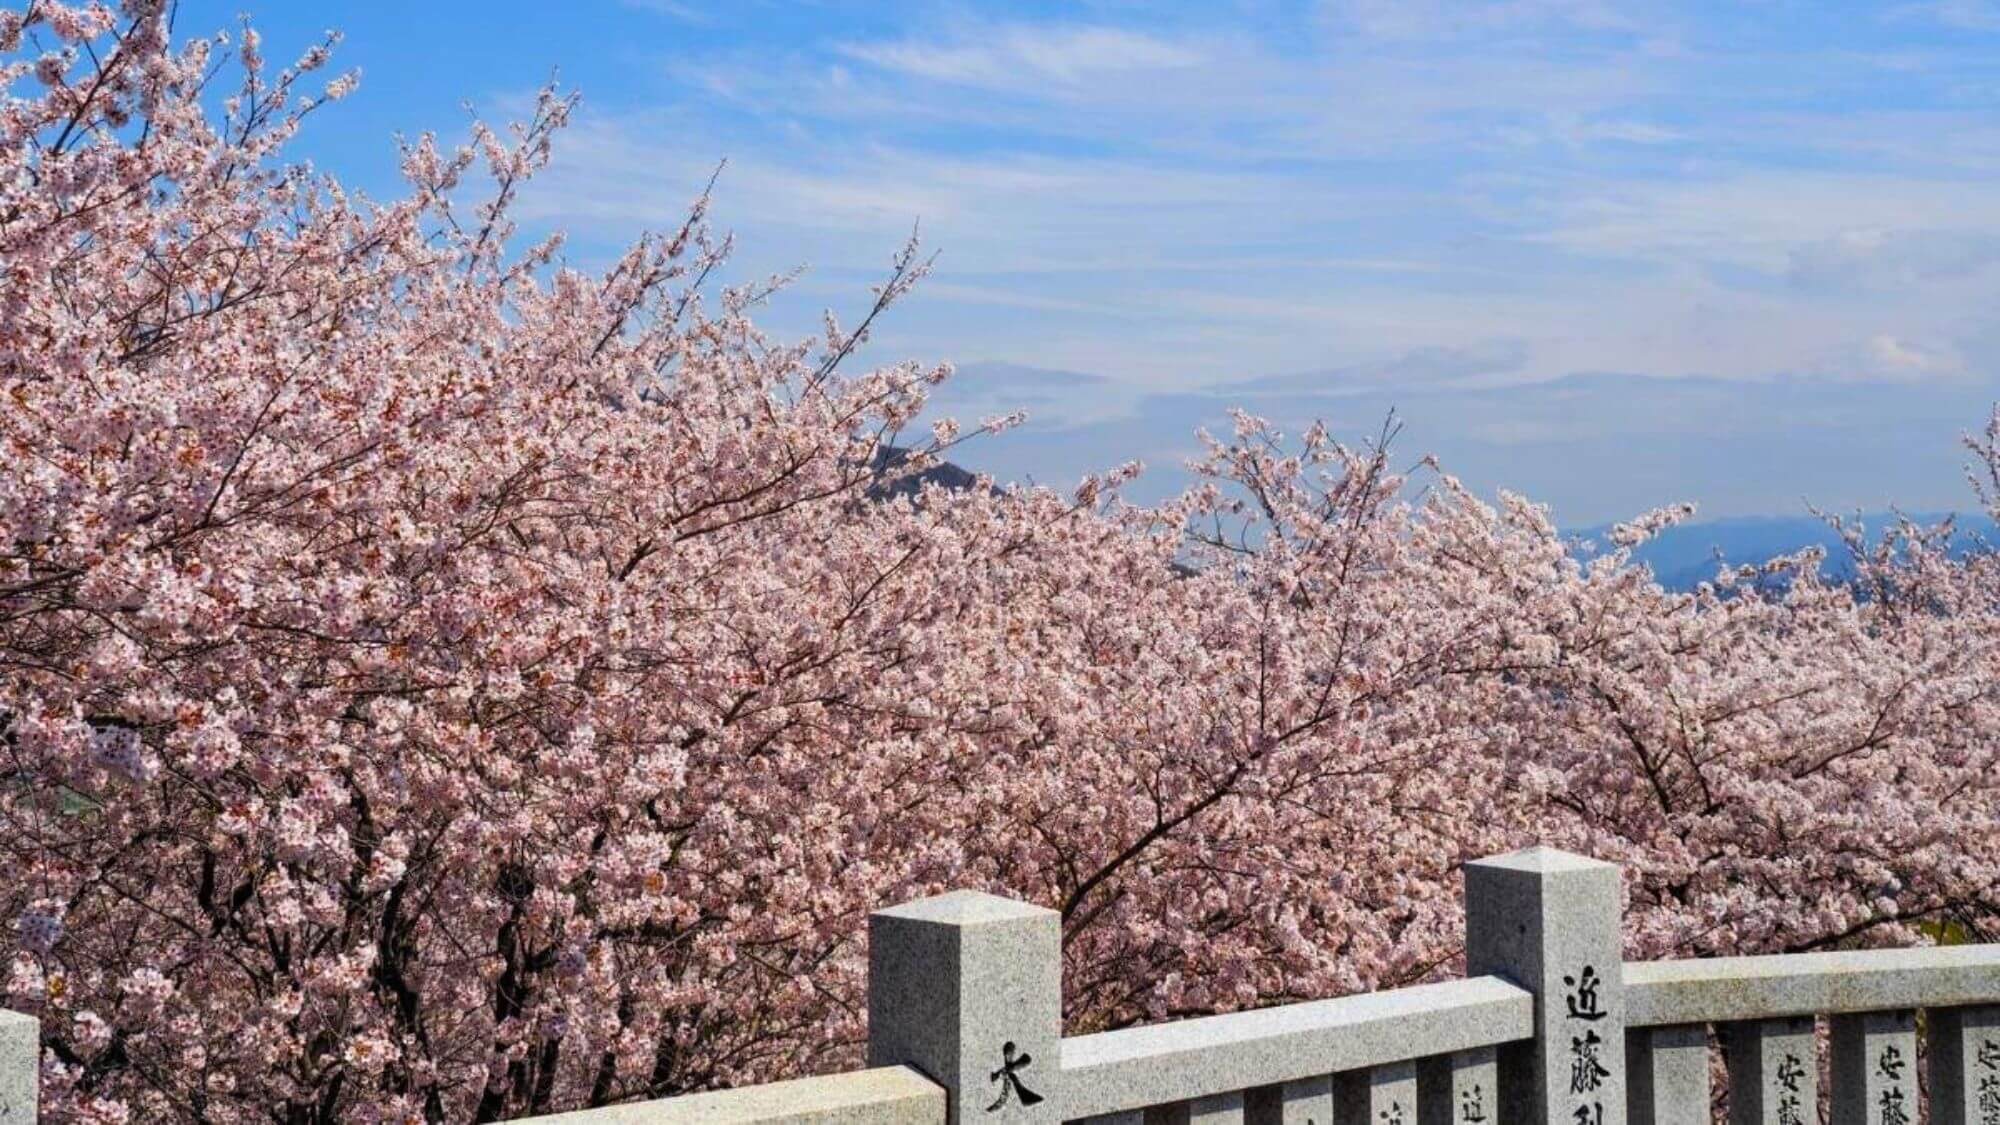 【朝日山公園】あさひやよりお車で10分。約170本のソメイヨシノが咲き誇る桜の名所としても有名です。